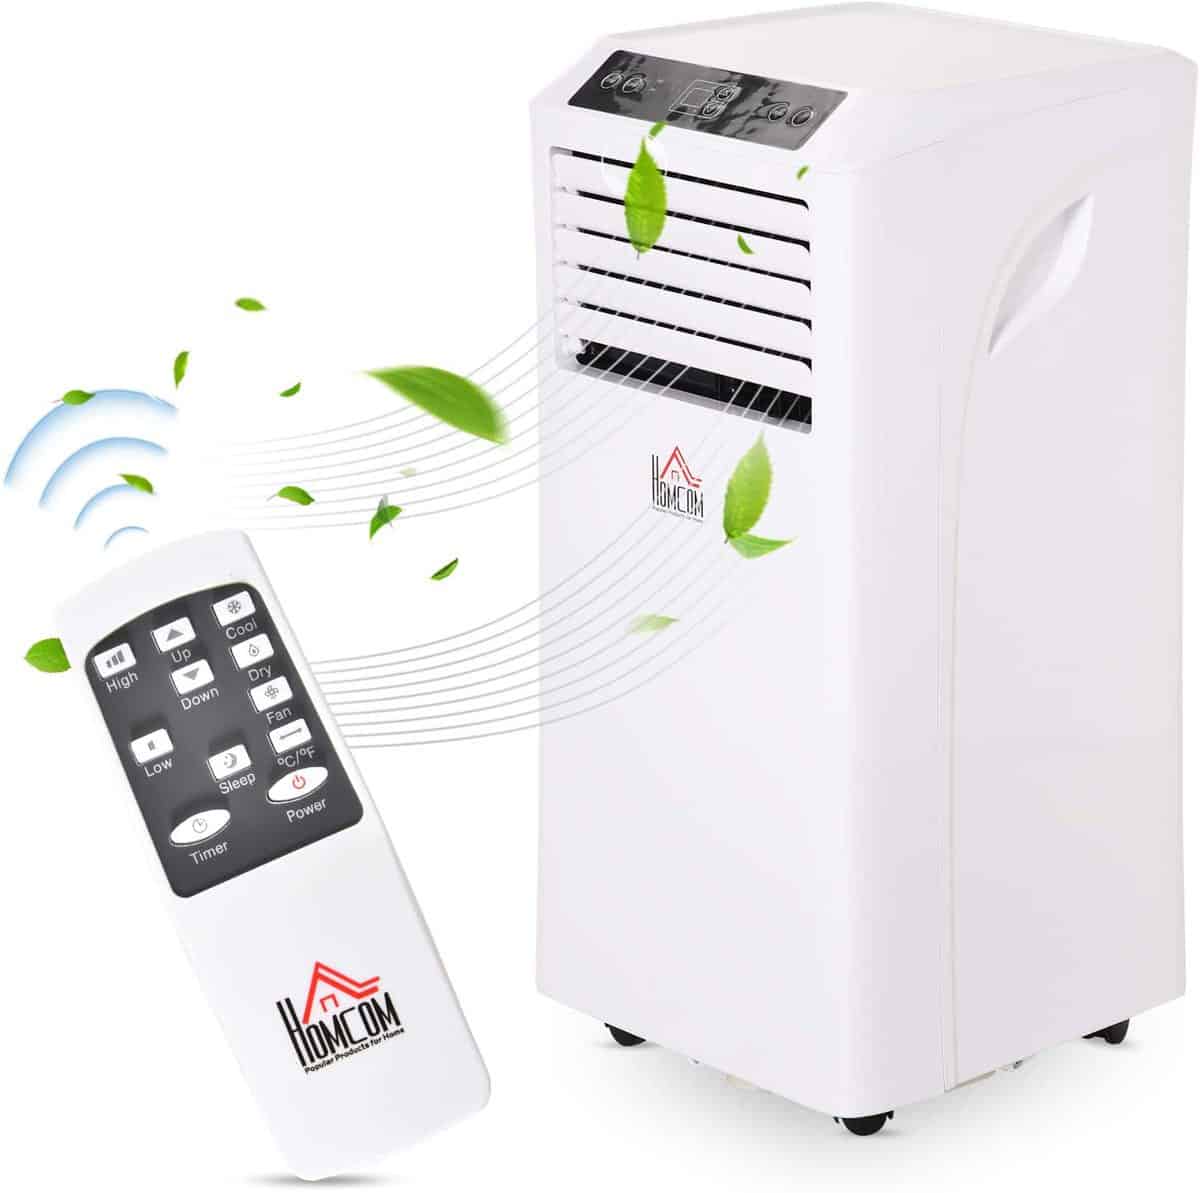 Homcom Mobile Klimaanlage (10.000 BTU bzw. 2900W Kühlleistung, inkl. Installationsmaterial & Fernbedienung) - für 229,90€ inkl. Versand statt 269,90€